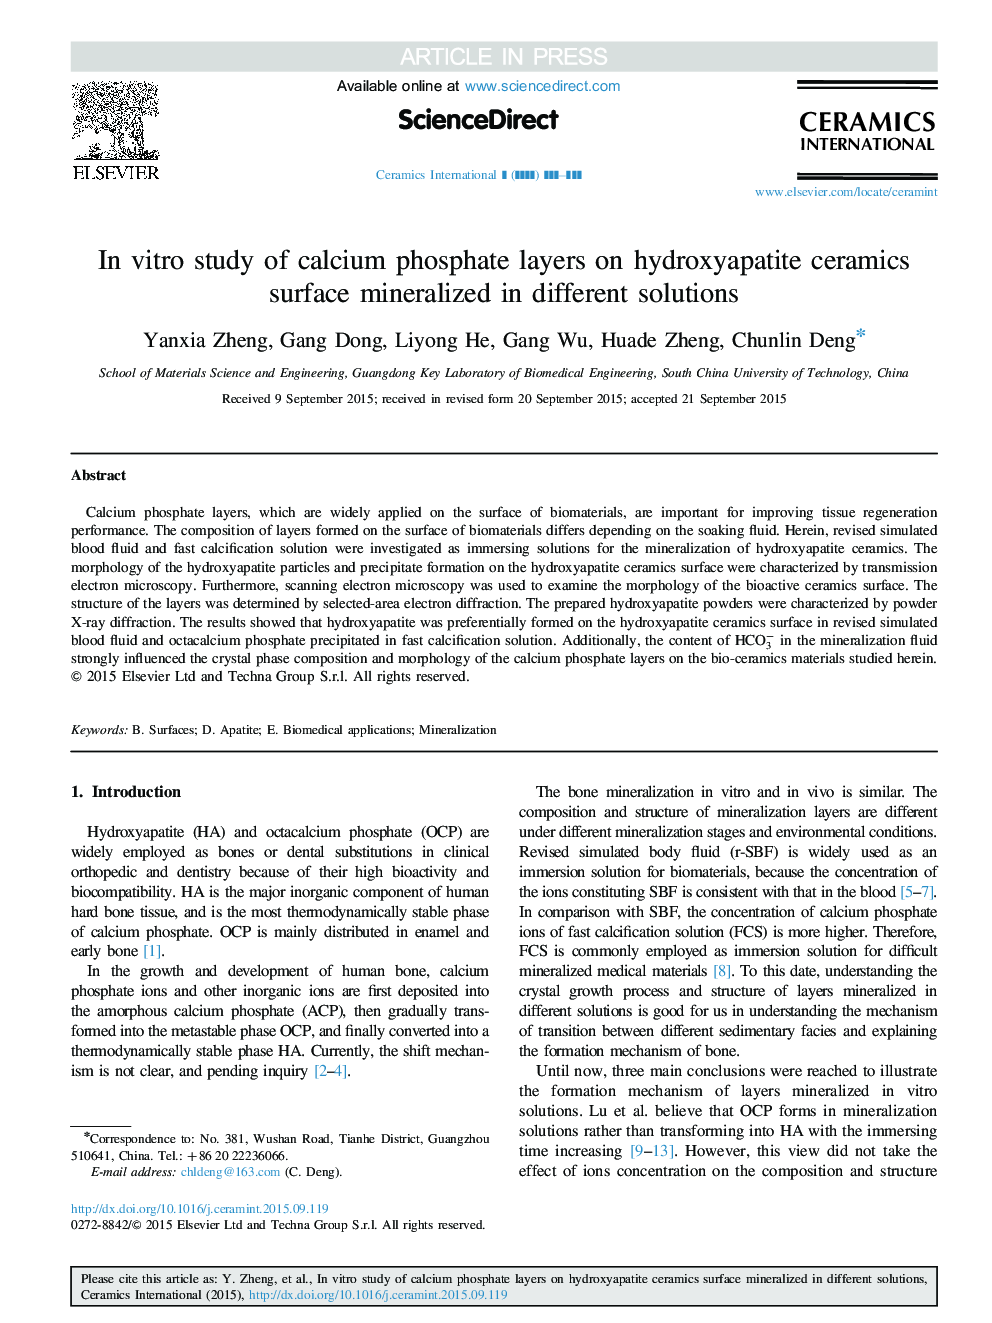 در آزمایش آزمایشگاهی لایه های فسفات کلسیم روی سرامیک هیدروکسی آپاتیت سطحی در محلول های مختلف مینرالیزه شده است 